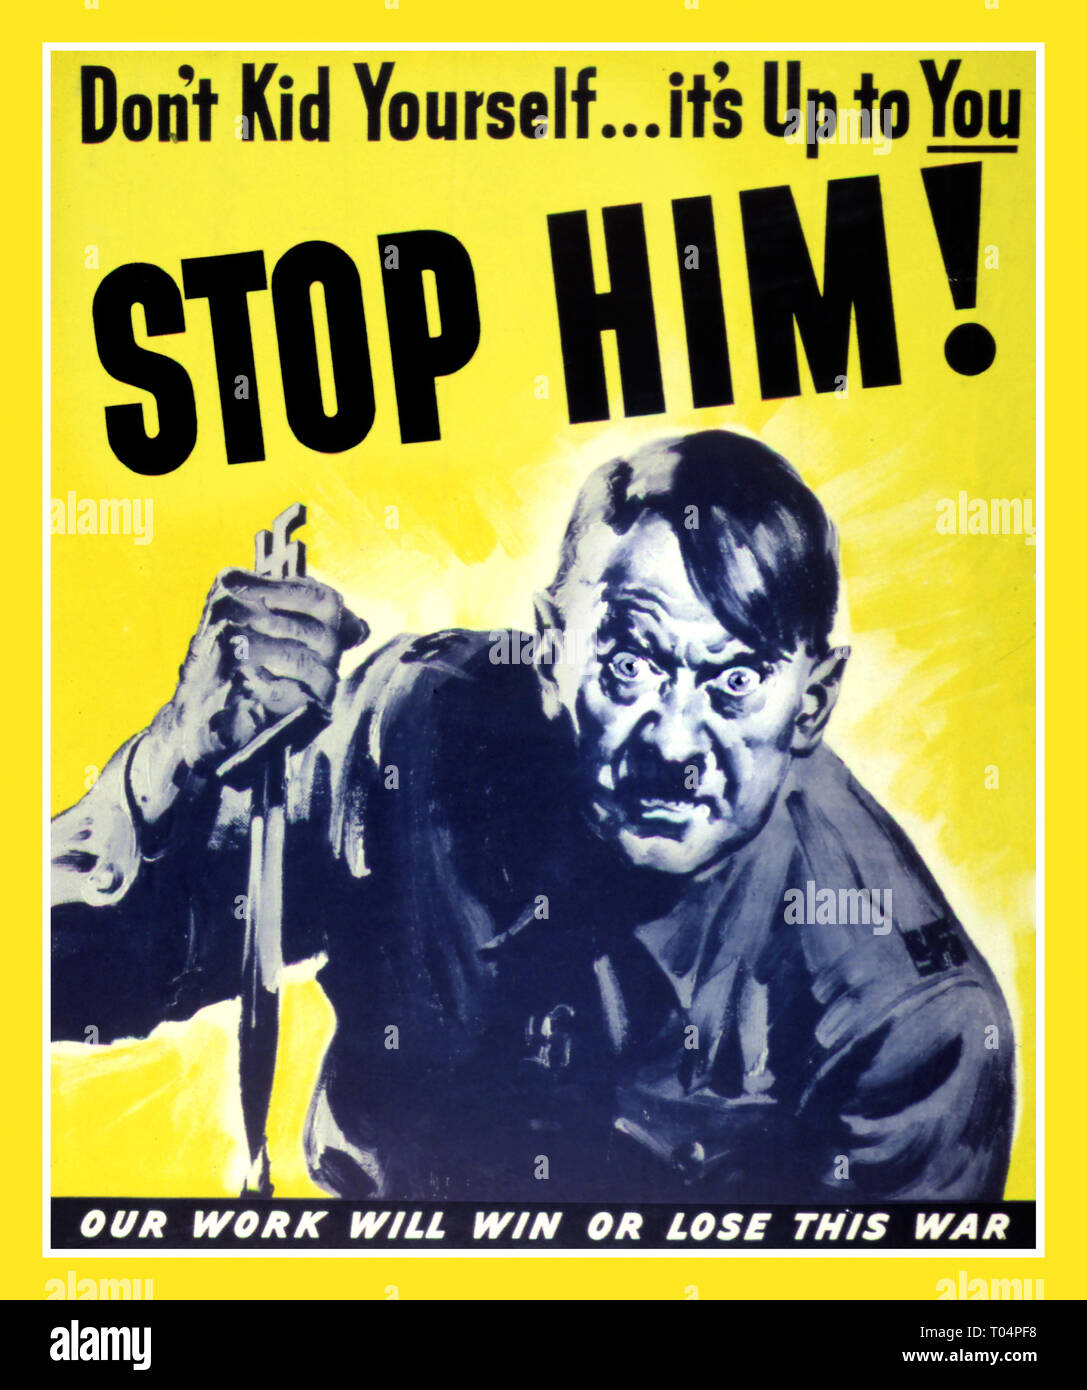 WW2 Adolf Hitler en rage démoniaque avec dague tachée DE LA SECONDE GUERRE MONDIALE Affiche de propagande Anti-Nazi Allemagne "pas d'enfantillage !...c'est à vous...l'arrêter !" "Notre travail va gagner ou perdre cette guerre' 1943 Guerre mondiale 2 Banque D'Images